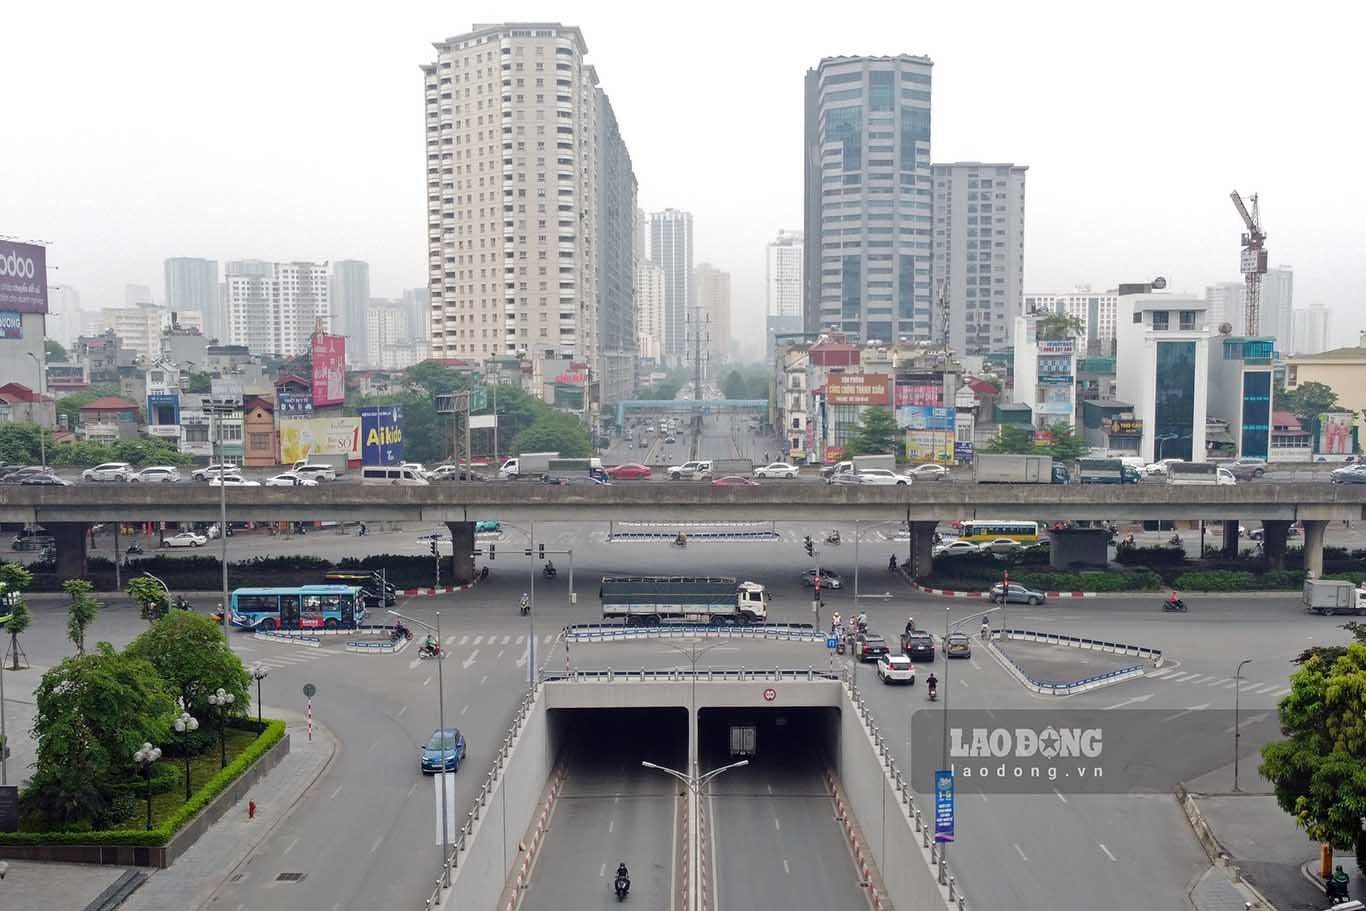 Trục đường Tố Hữu - Lê Văn Lương ngày thường có mật độ phương tiện lưu thông lớn, tuy nhiên trong hôm nay lại rất vắng vẻ.